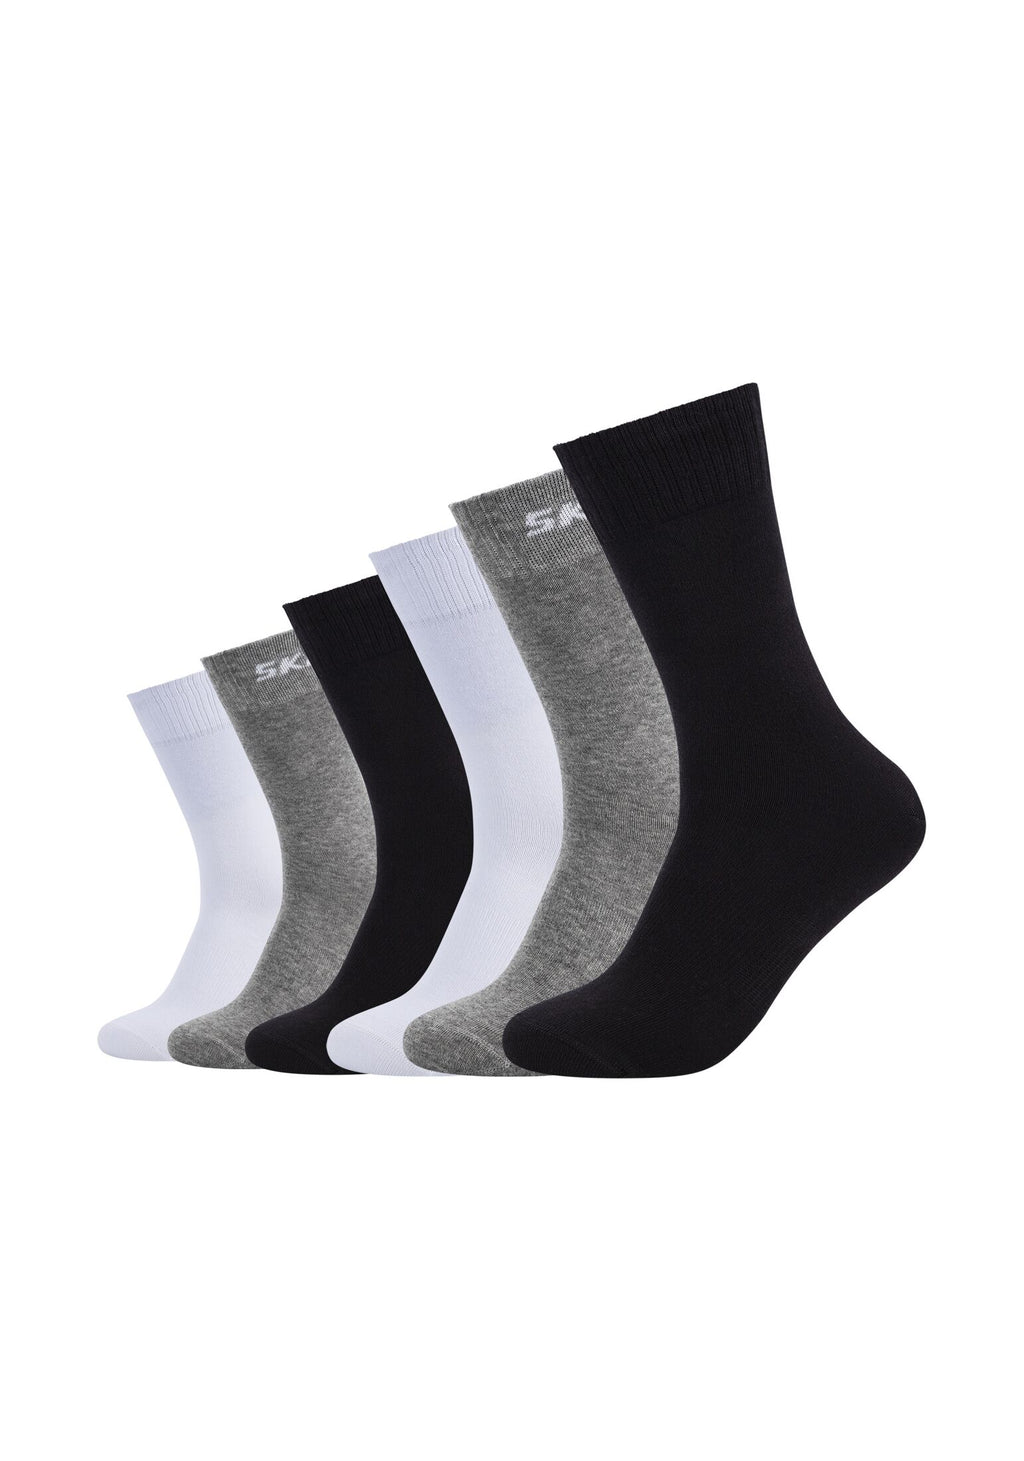 – Socken 6er Pack ONSKINERY Mesh Ventilation